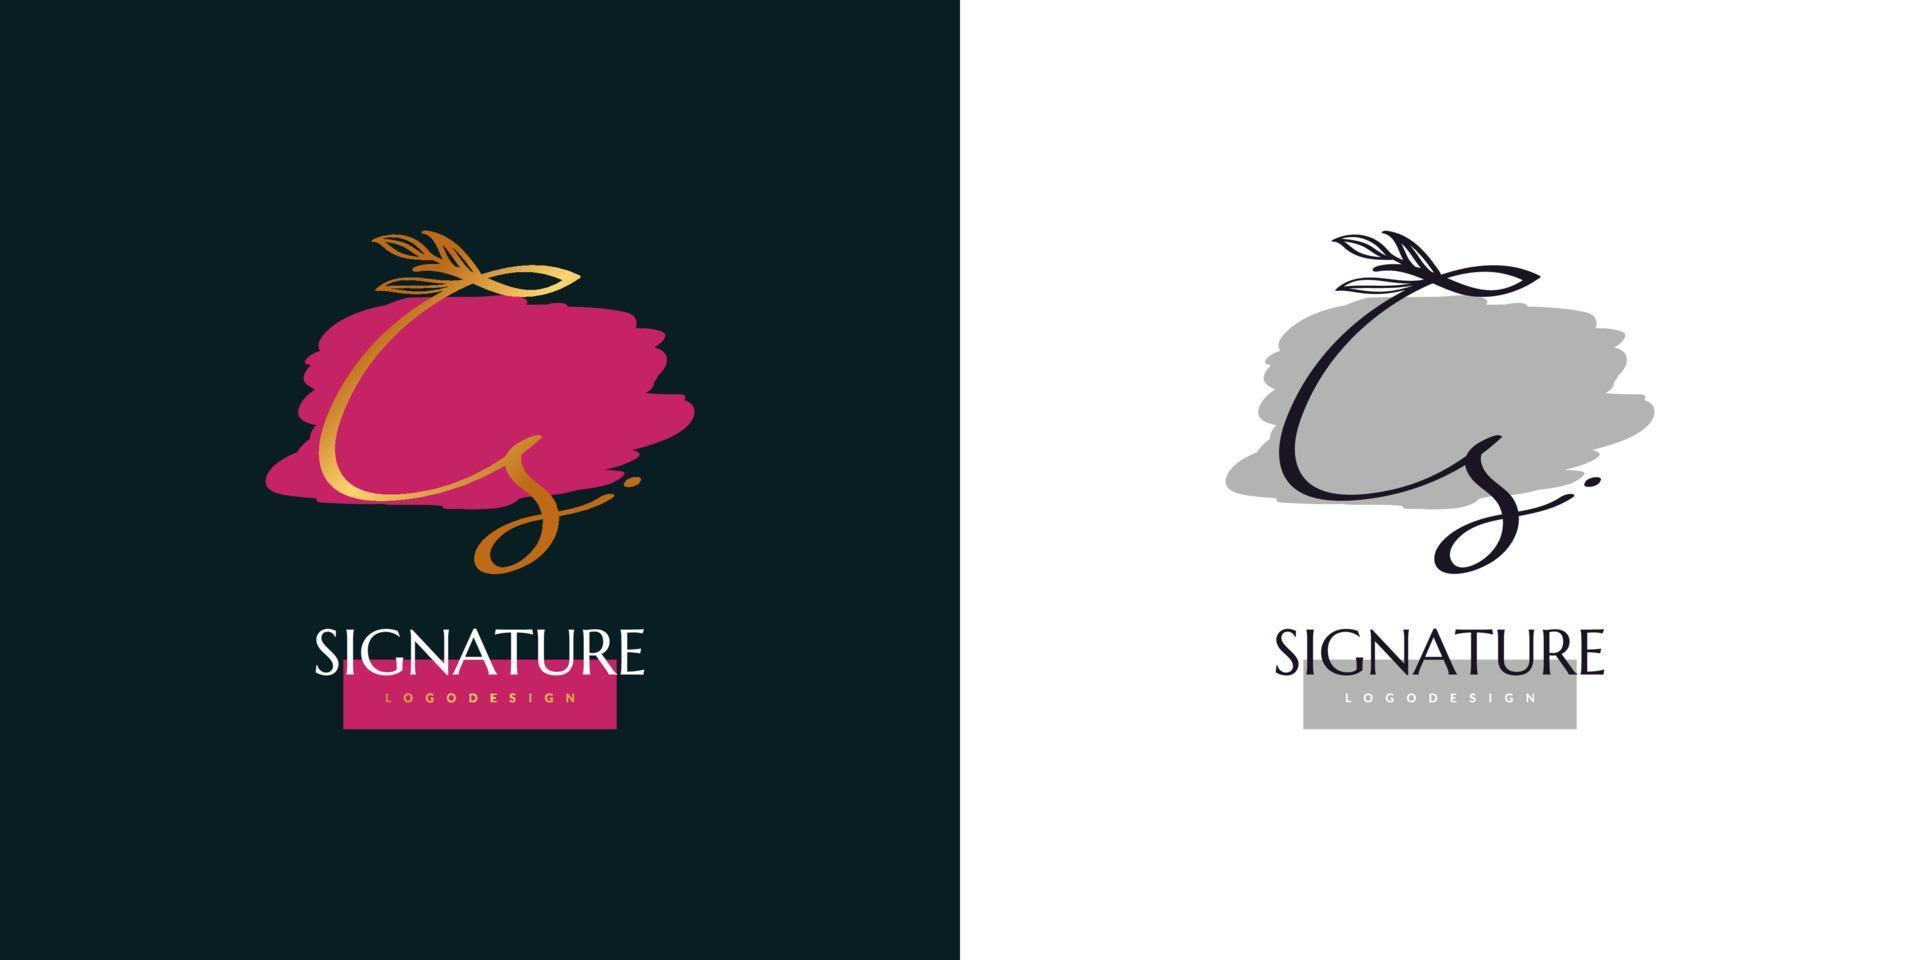 cs initial logotypdesign med handstil i guldgradient. cs signaturlogotyp eller symbol för bröllop, mode, smycken, boutique, botanisk, blommig och affärsidentitet. feminin logotyp vektor